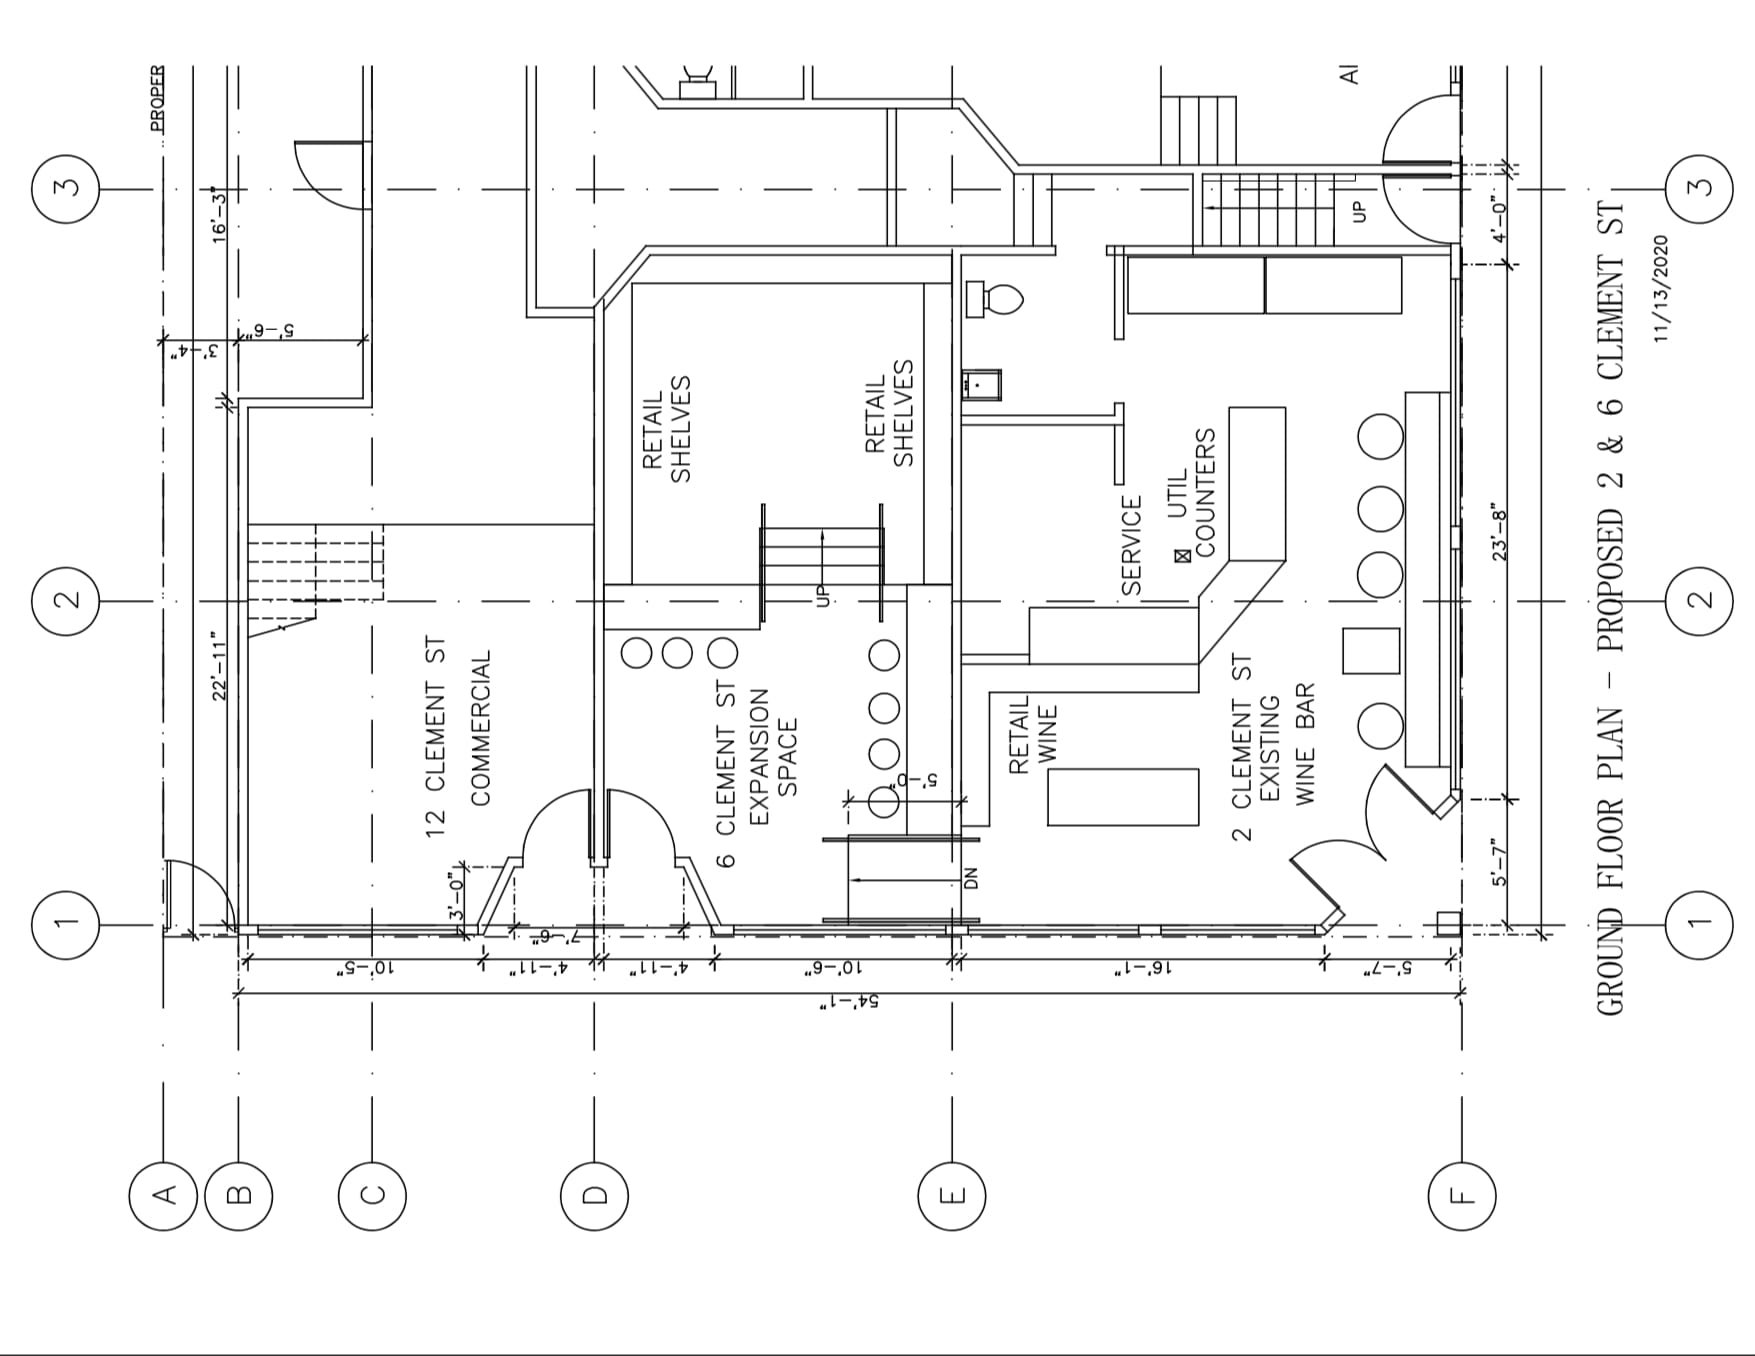 399 Arguello Proposed Ground Floor Plan